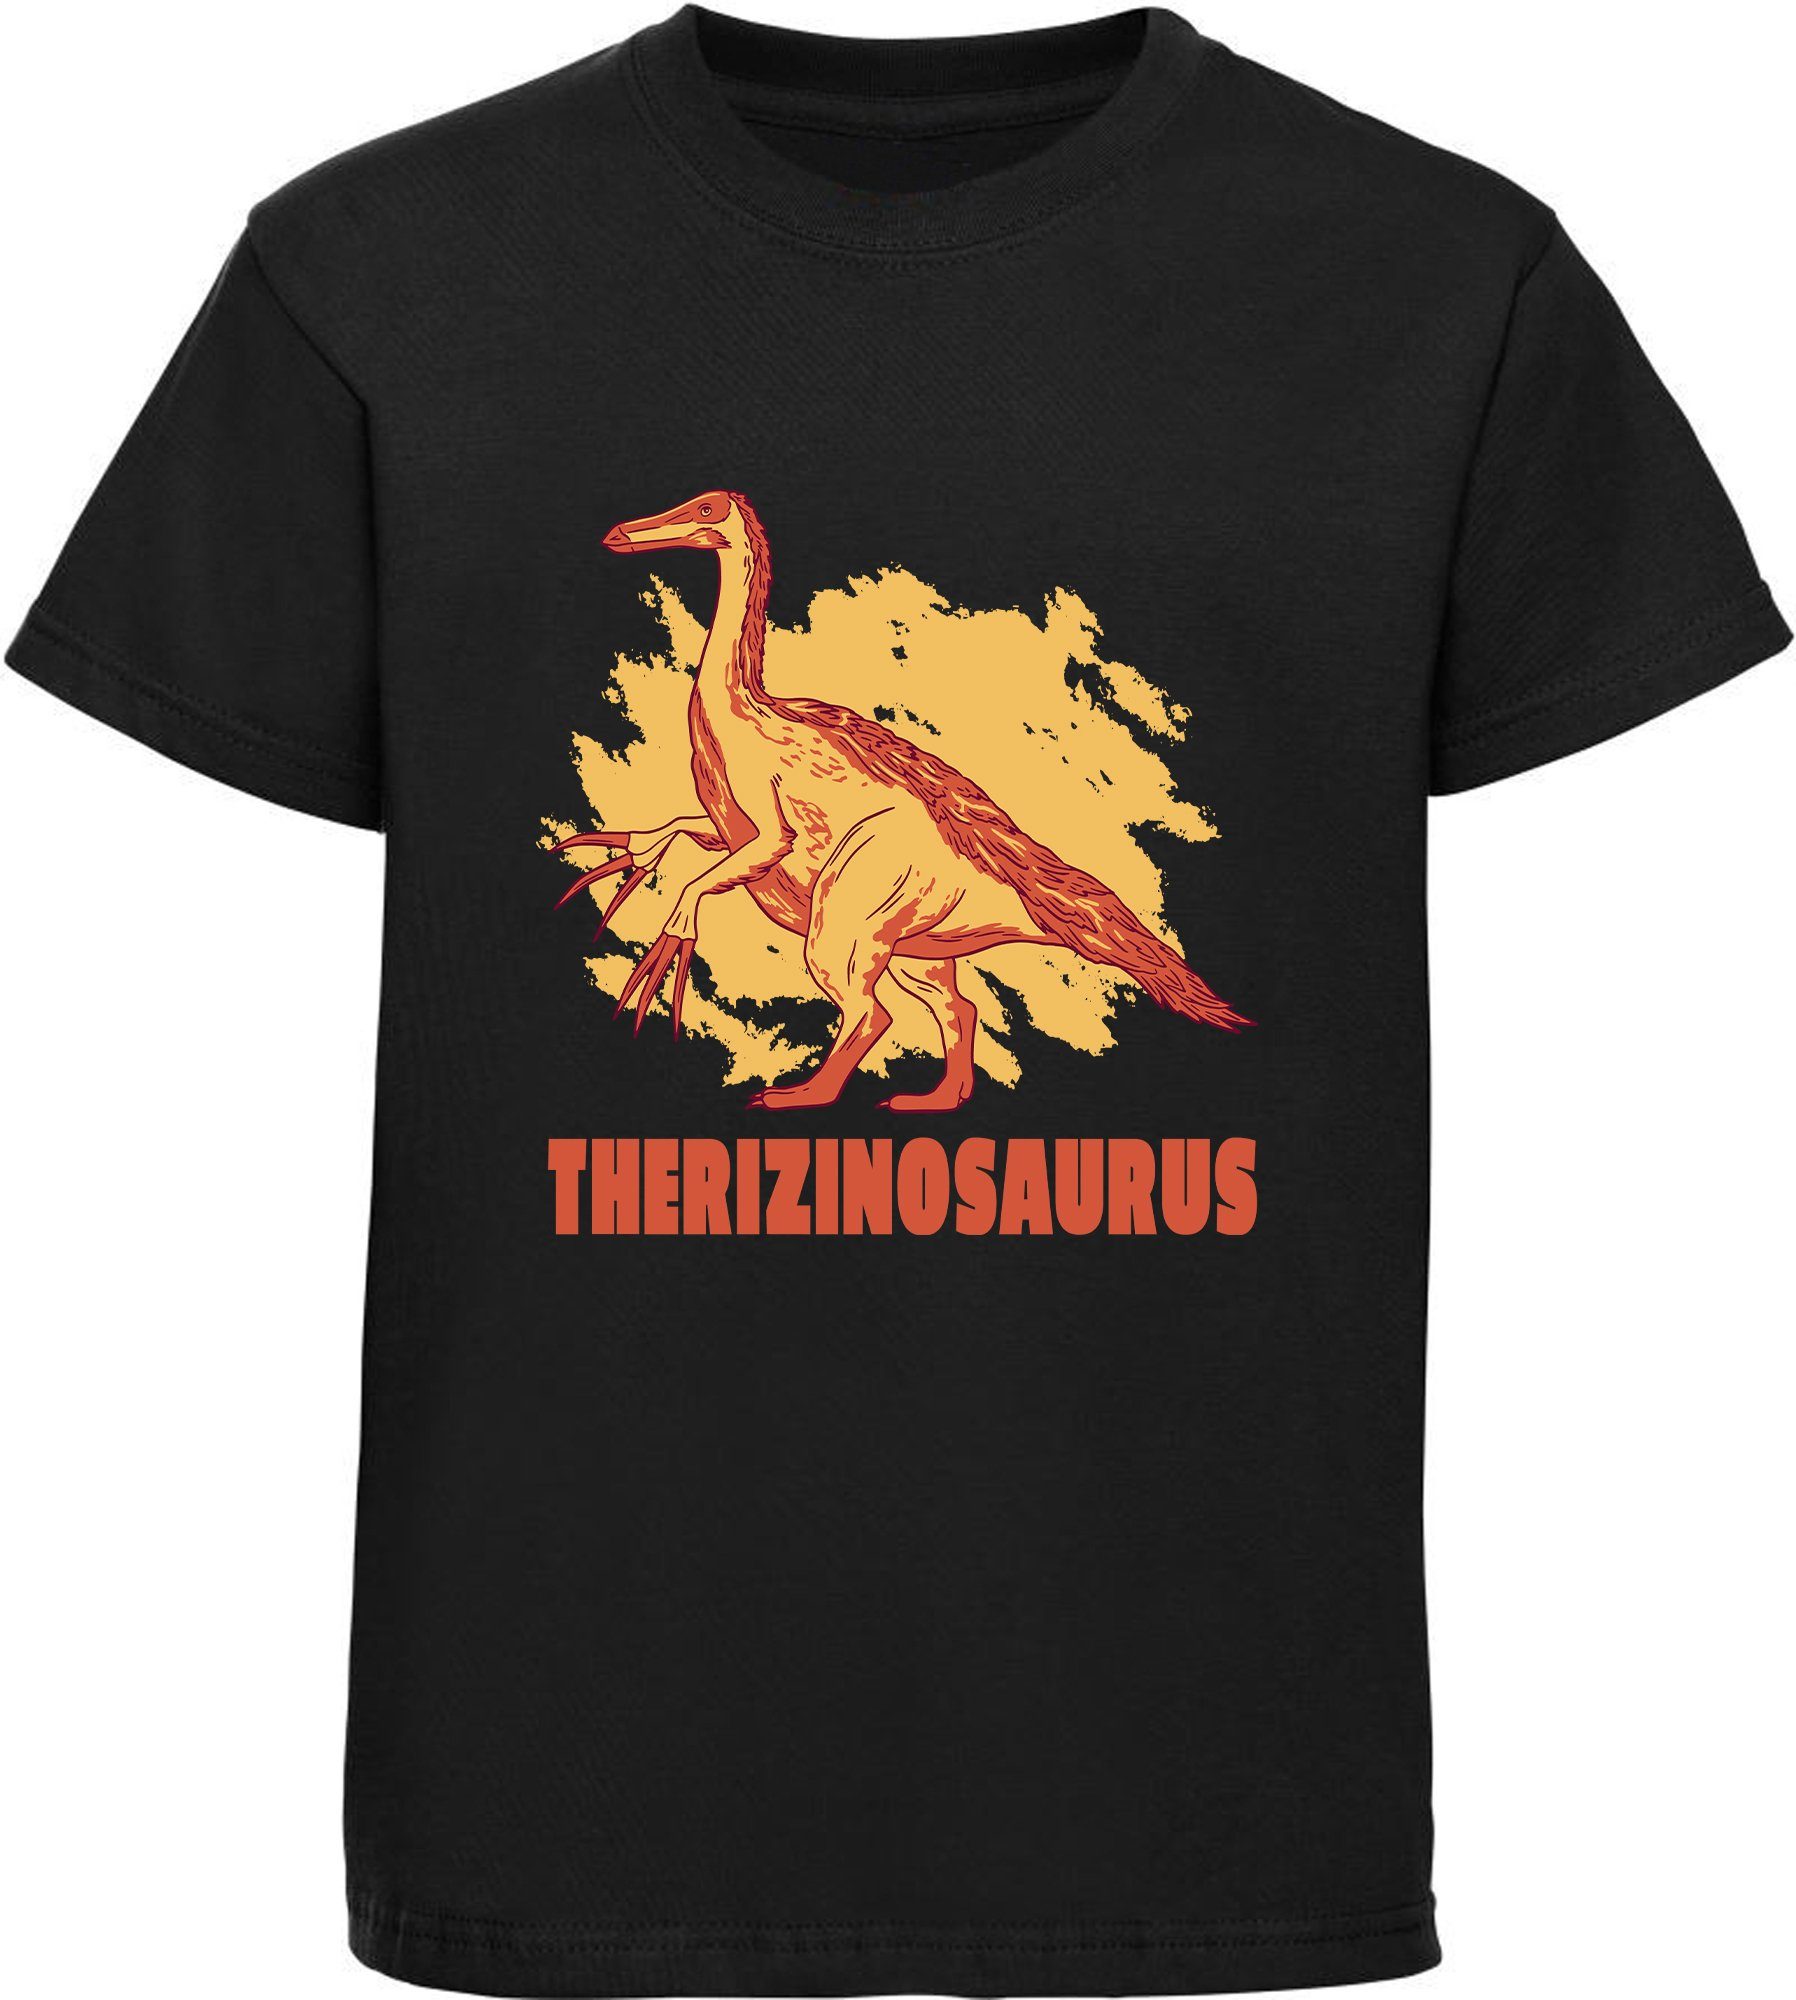 MyDesign24 Print-Shirt bedrucktes Kinder T-Shirt mit Therizinosaurus Baumwollshirt mit Dino, schwarz, weiß, rot, blau, i87